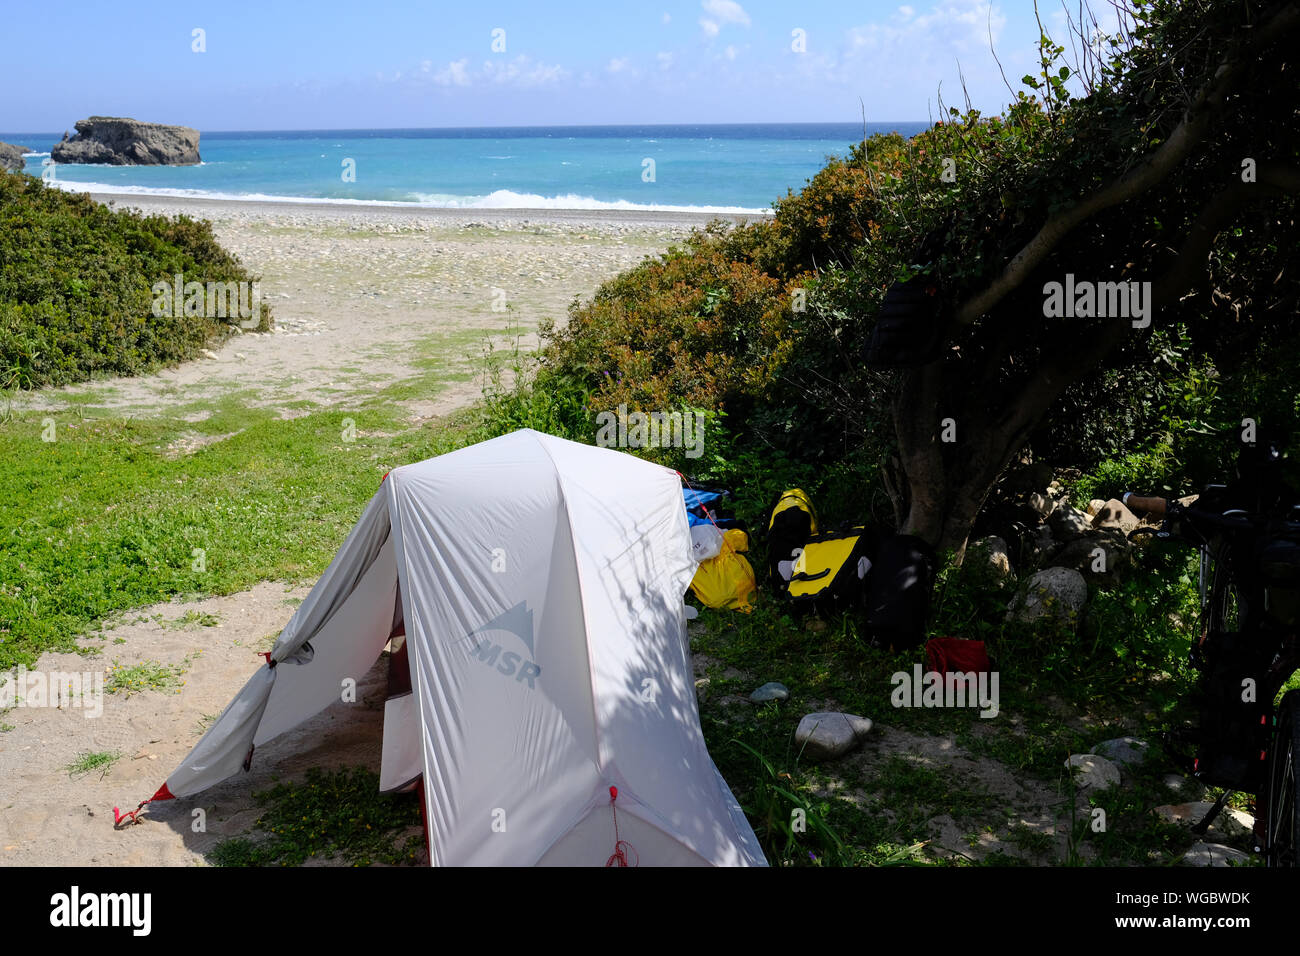 Wildes Campen am Strand von Sougia, Kreta, Griechenland Stockfotografie -  Alamy